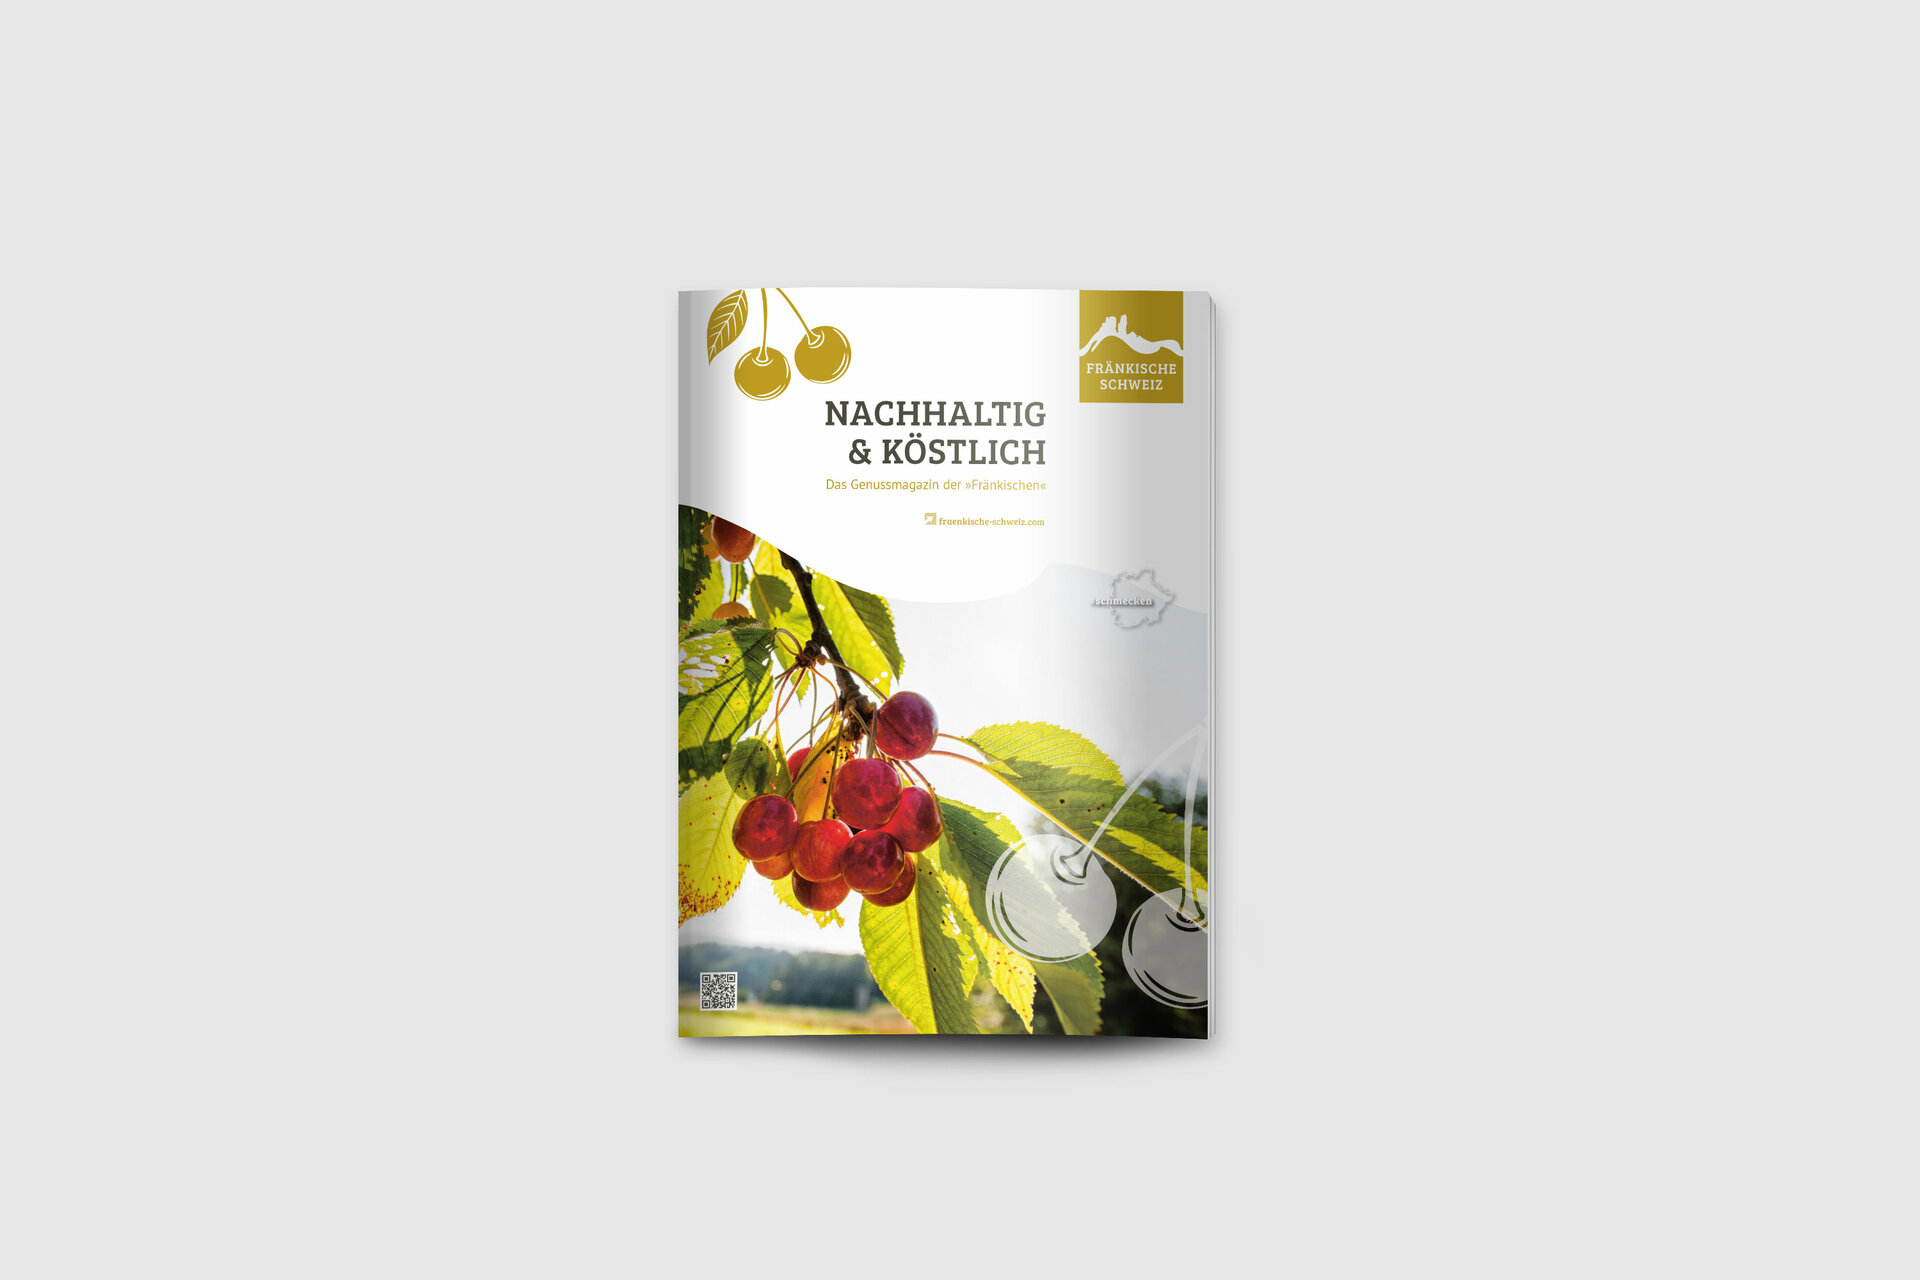 Titel der Broschüre mit gelben Logo und einem Kirschbaumast, an dem rote Kirschen hängen.